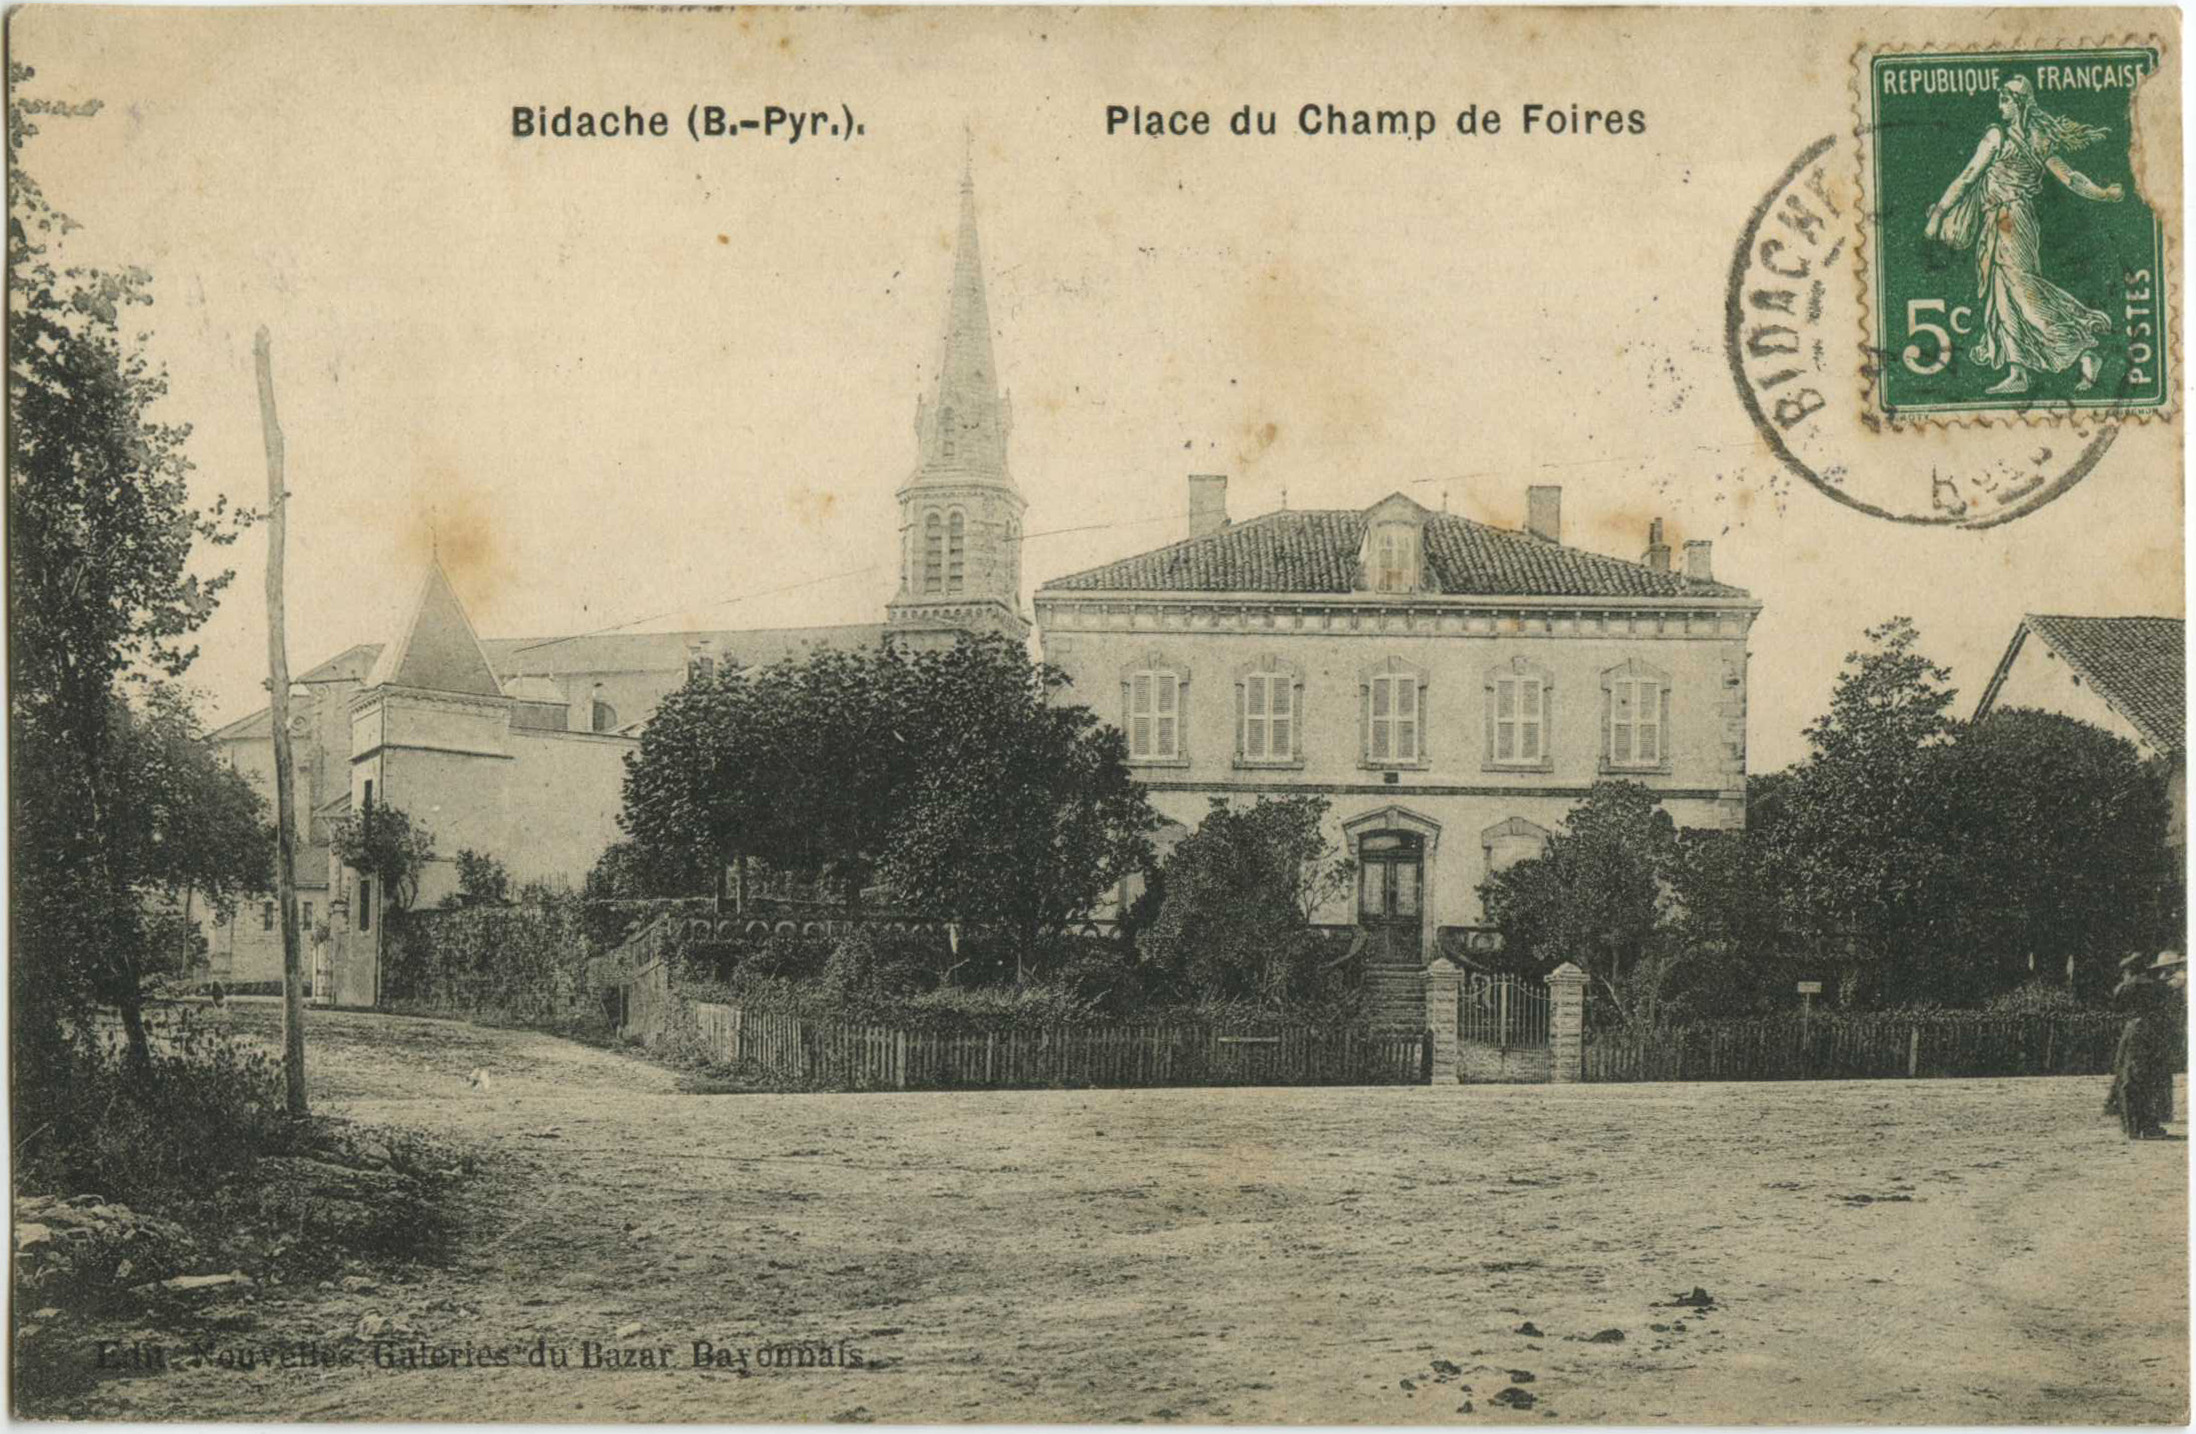 Bidache - Place du Champ de Foires